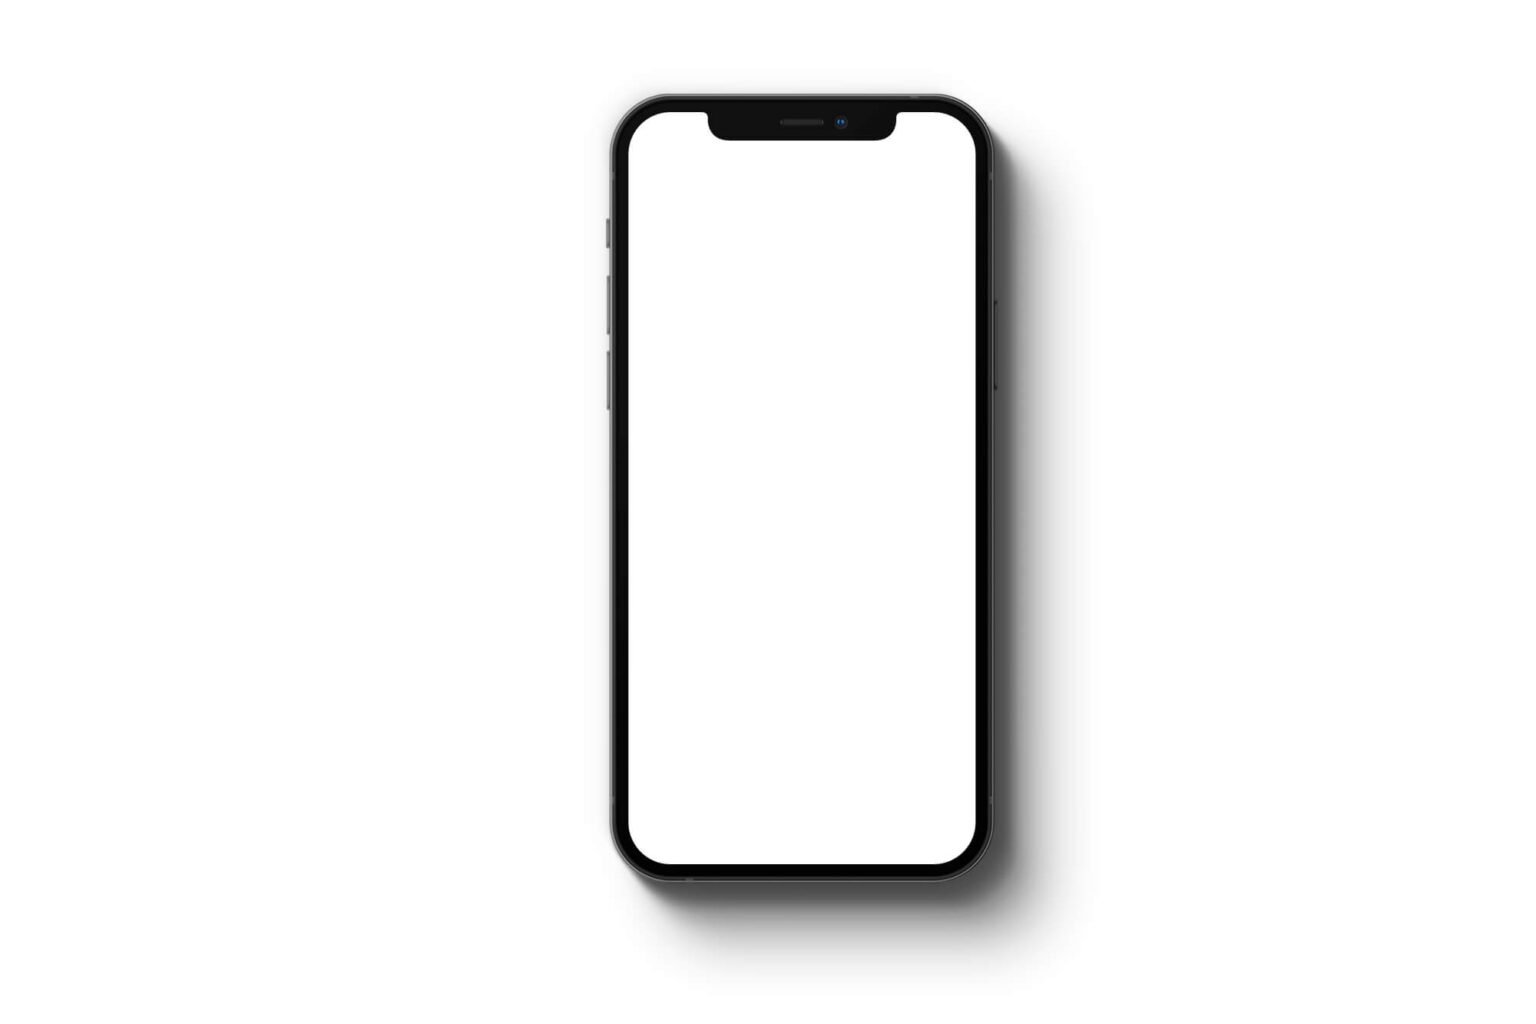 iphone wallpaper template psd